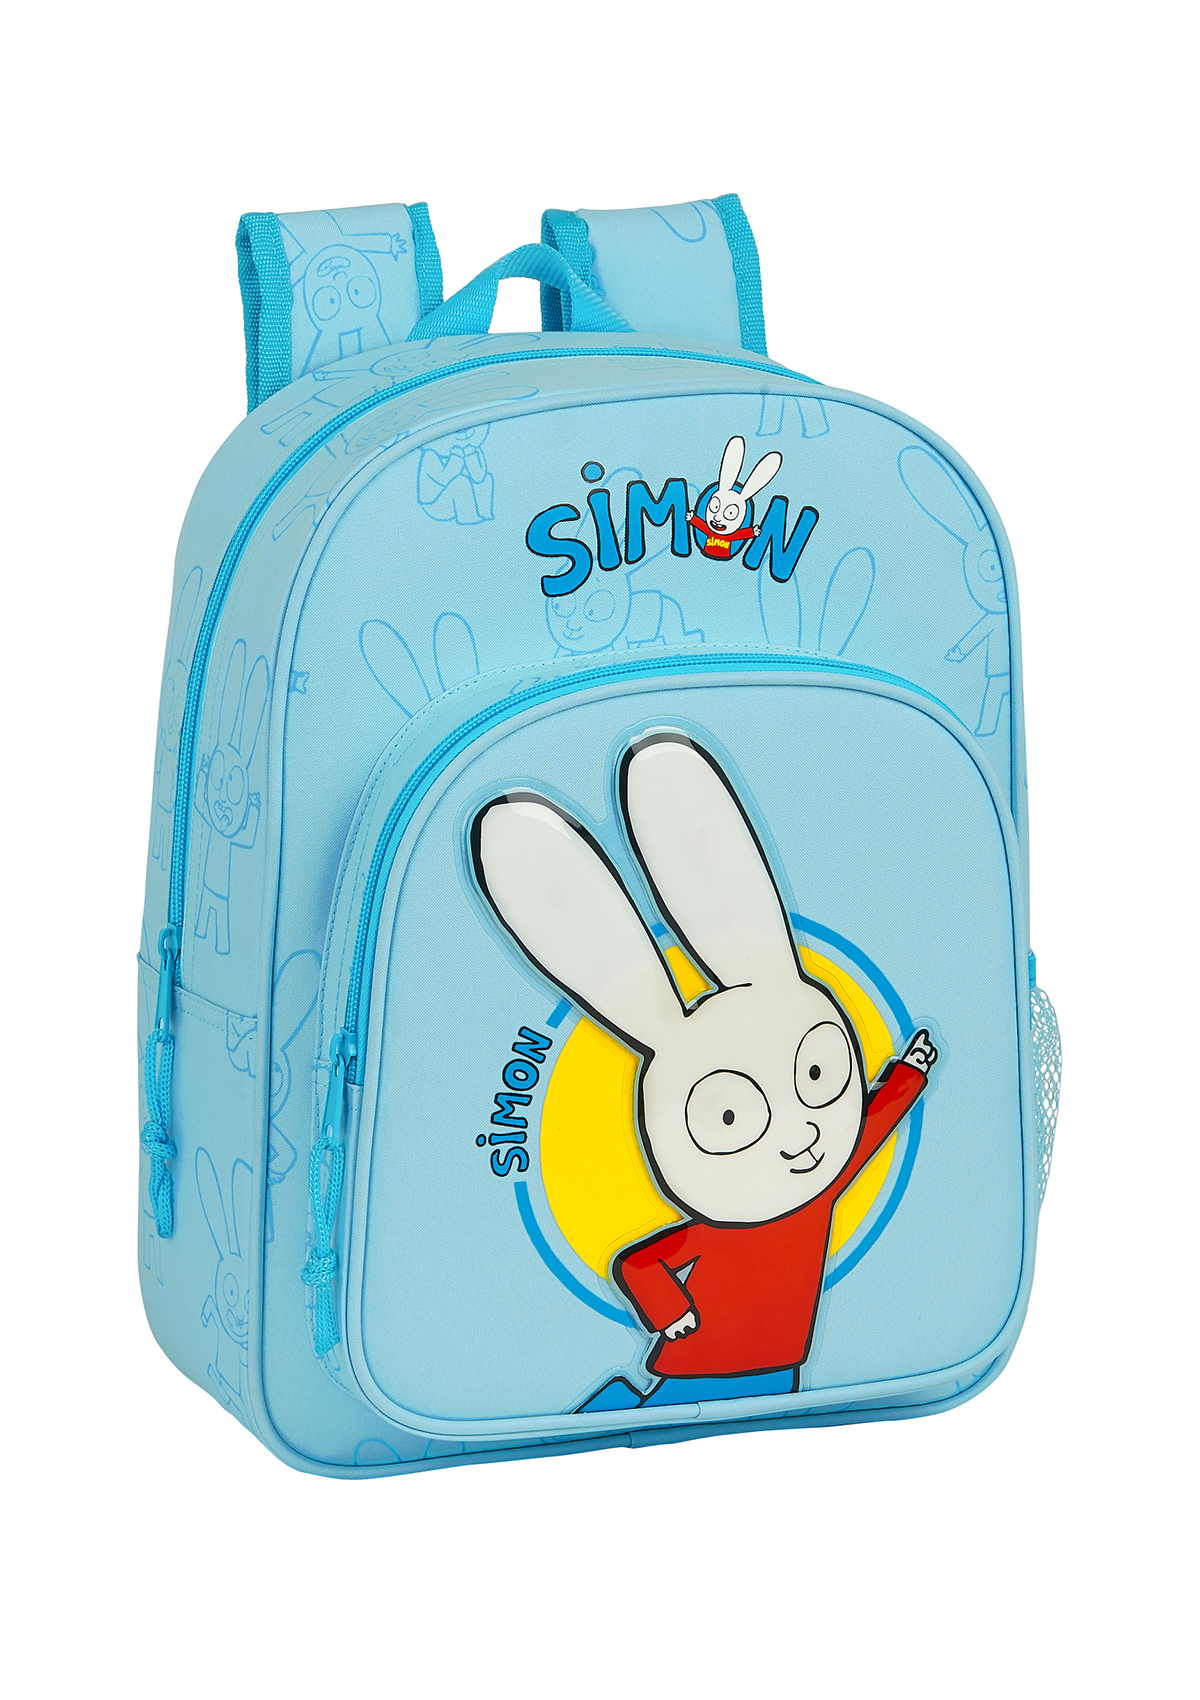 Simon The Bunny Small Backpack